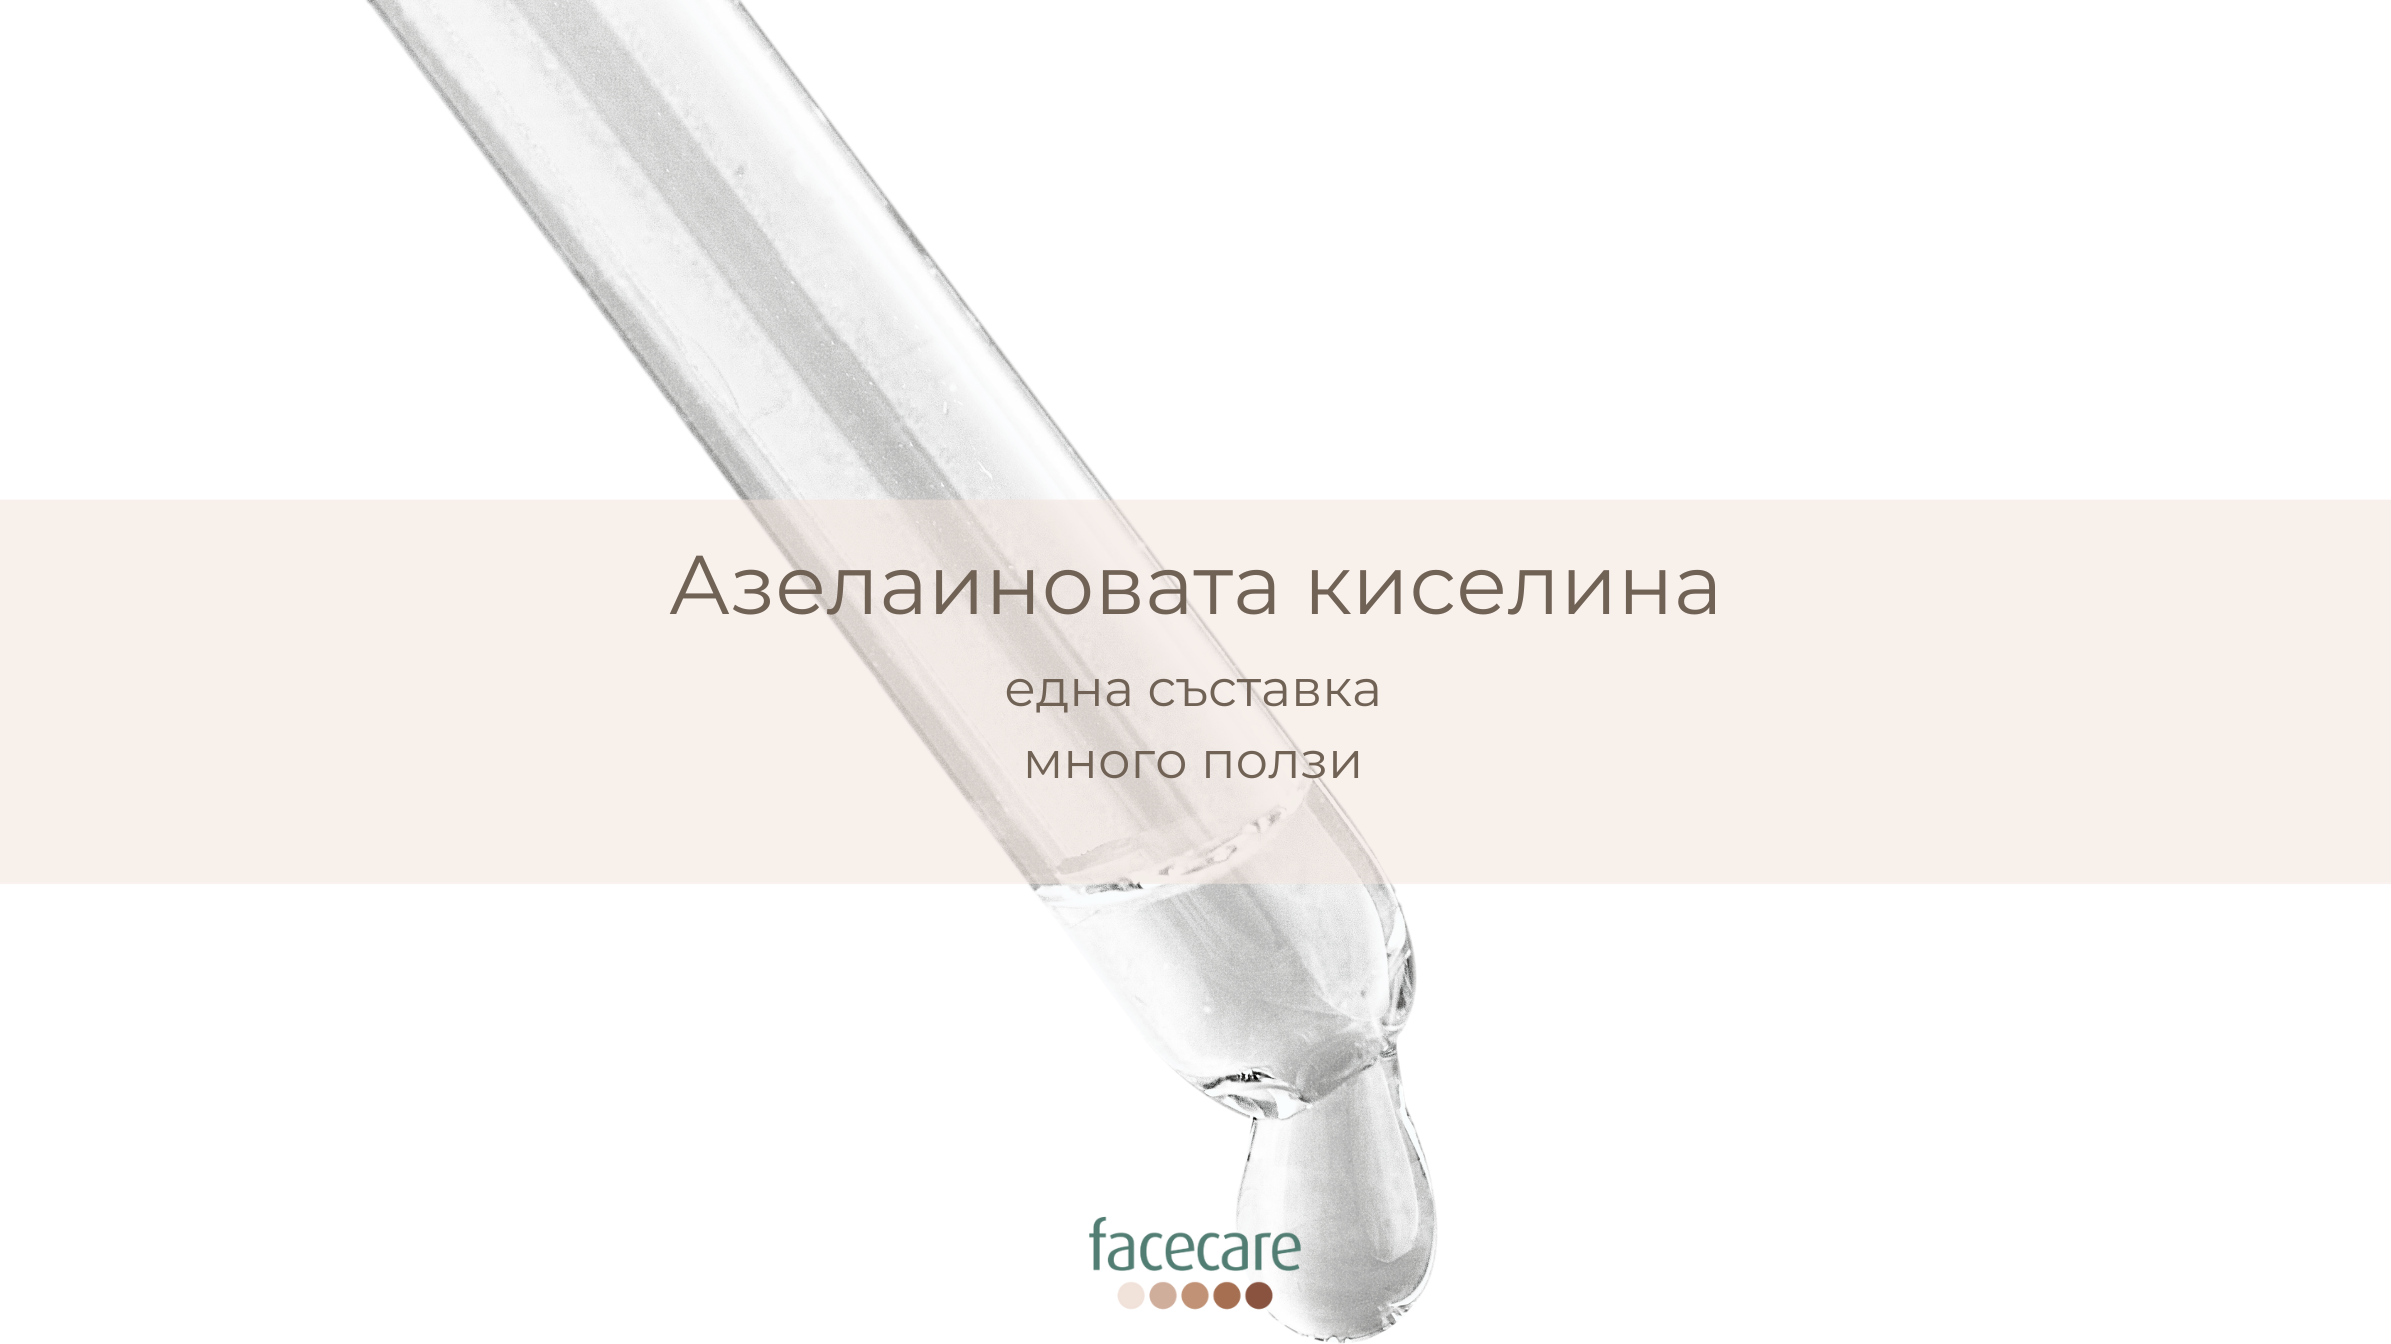 Азелаиновата киселина - facecare.bg